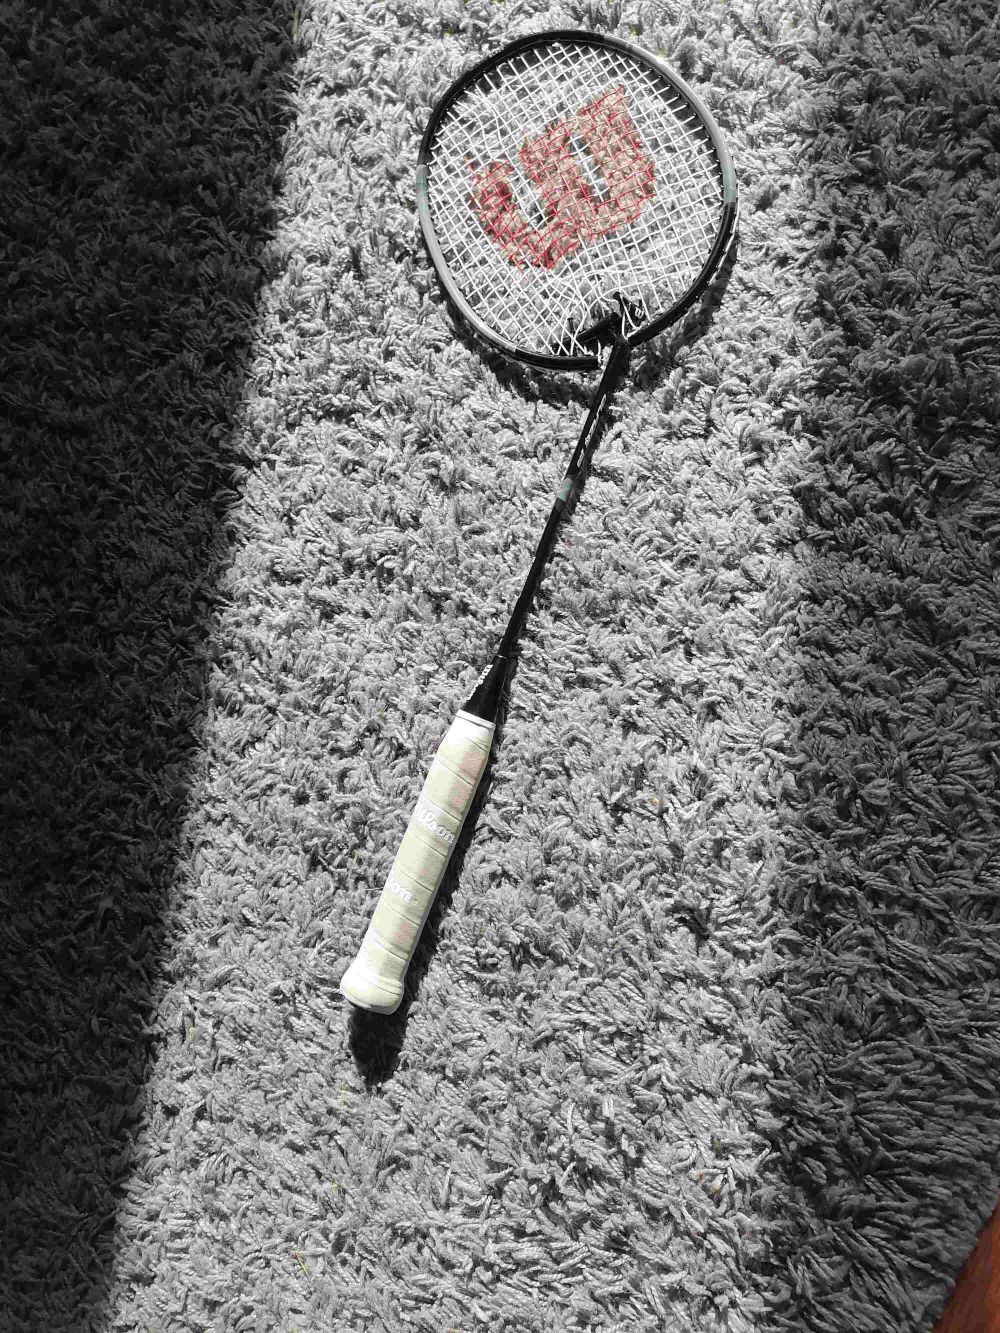 9 Momen Sial saat Main Badminton, Pernah Mengalaminya?